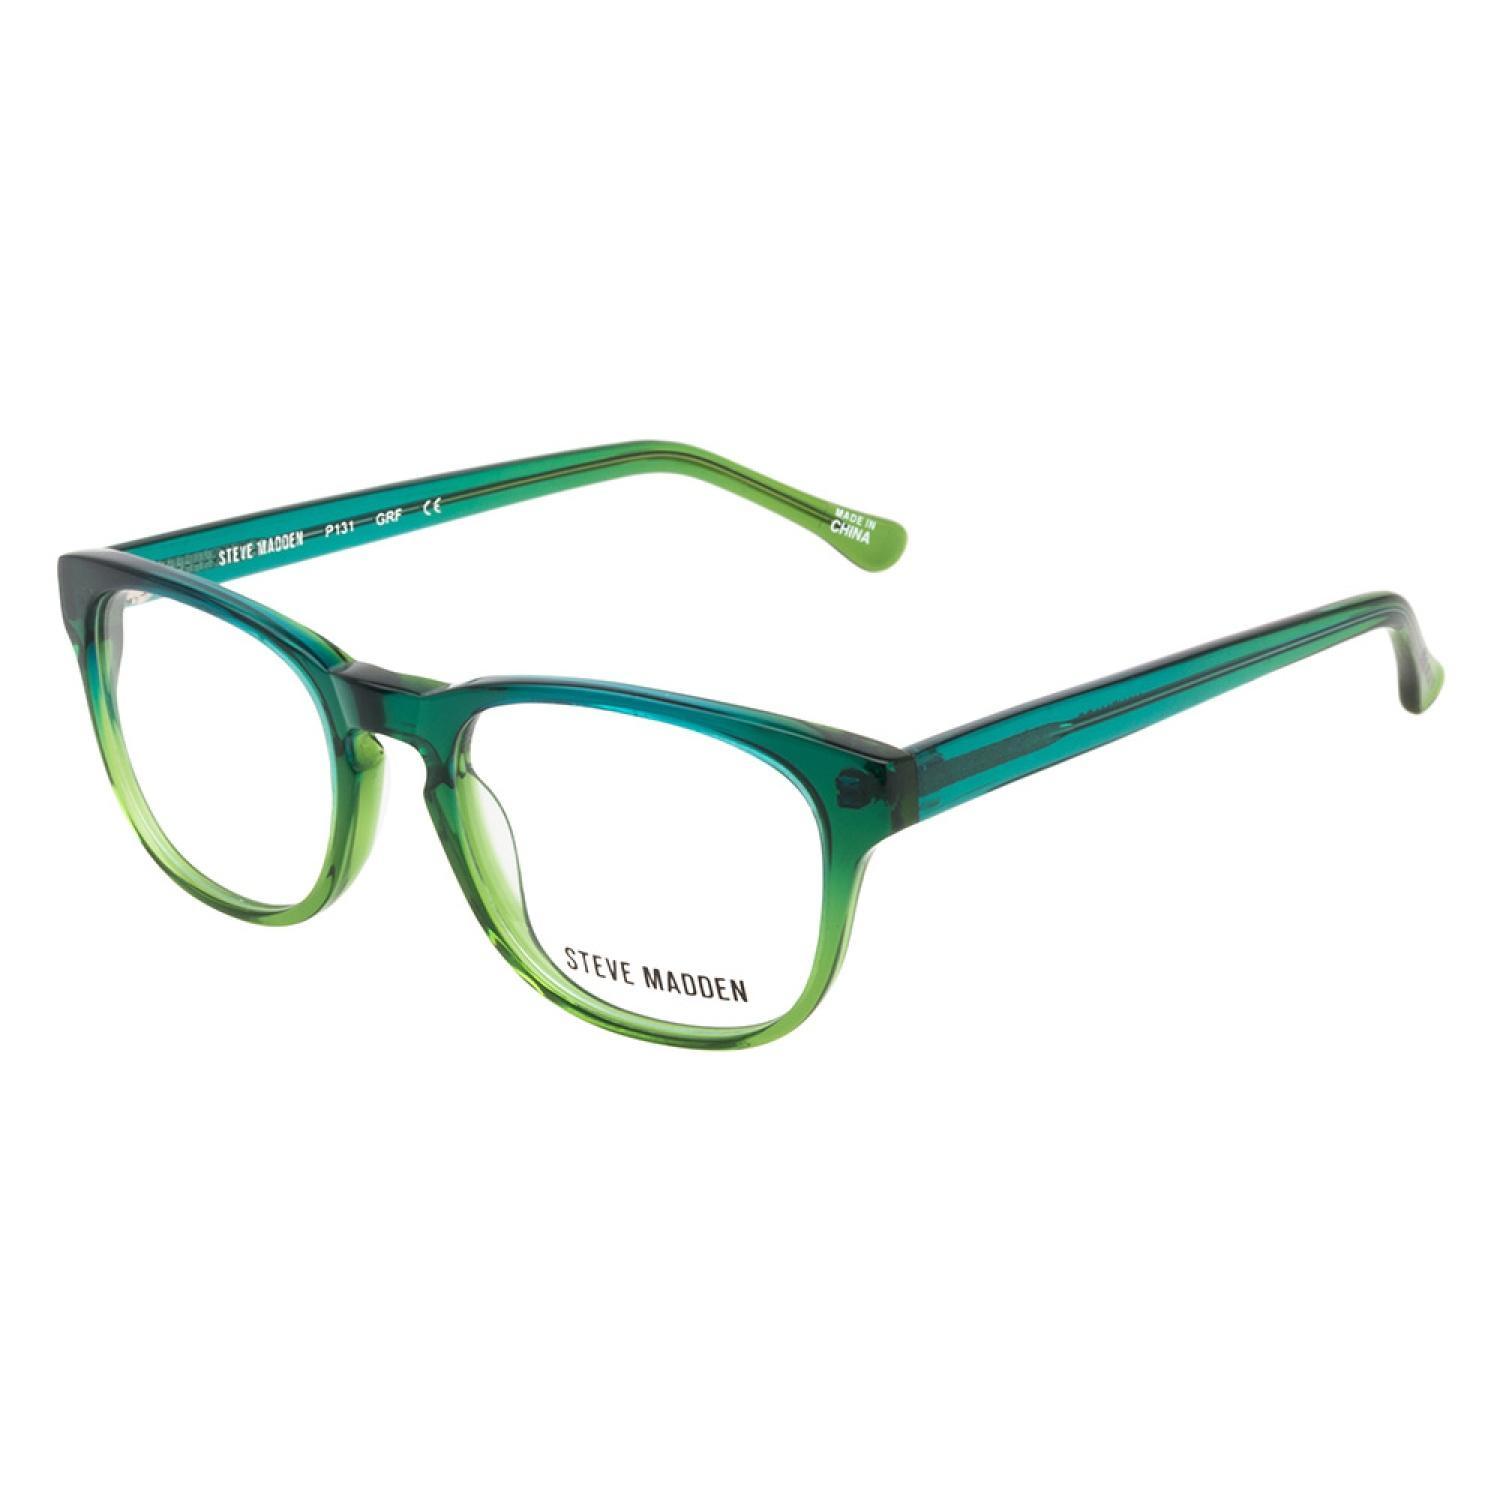 Steve Madden P131 GRF Green Apple Prescription Eyeglasses - 17928979 ...